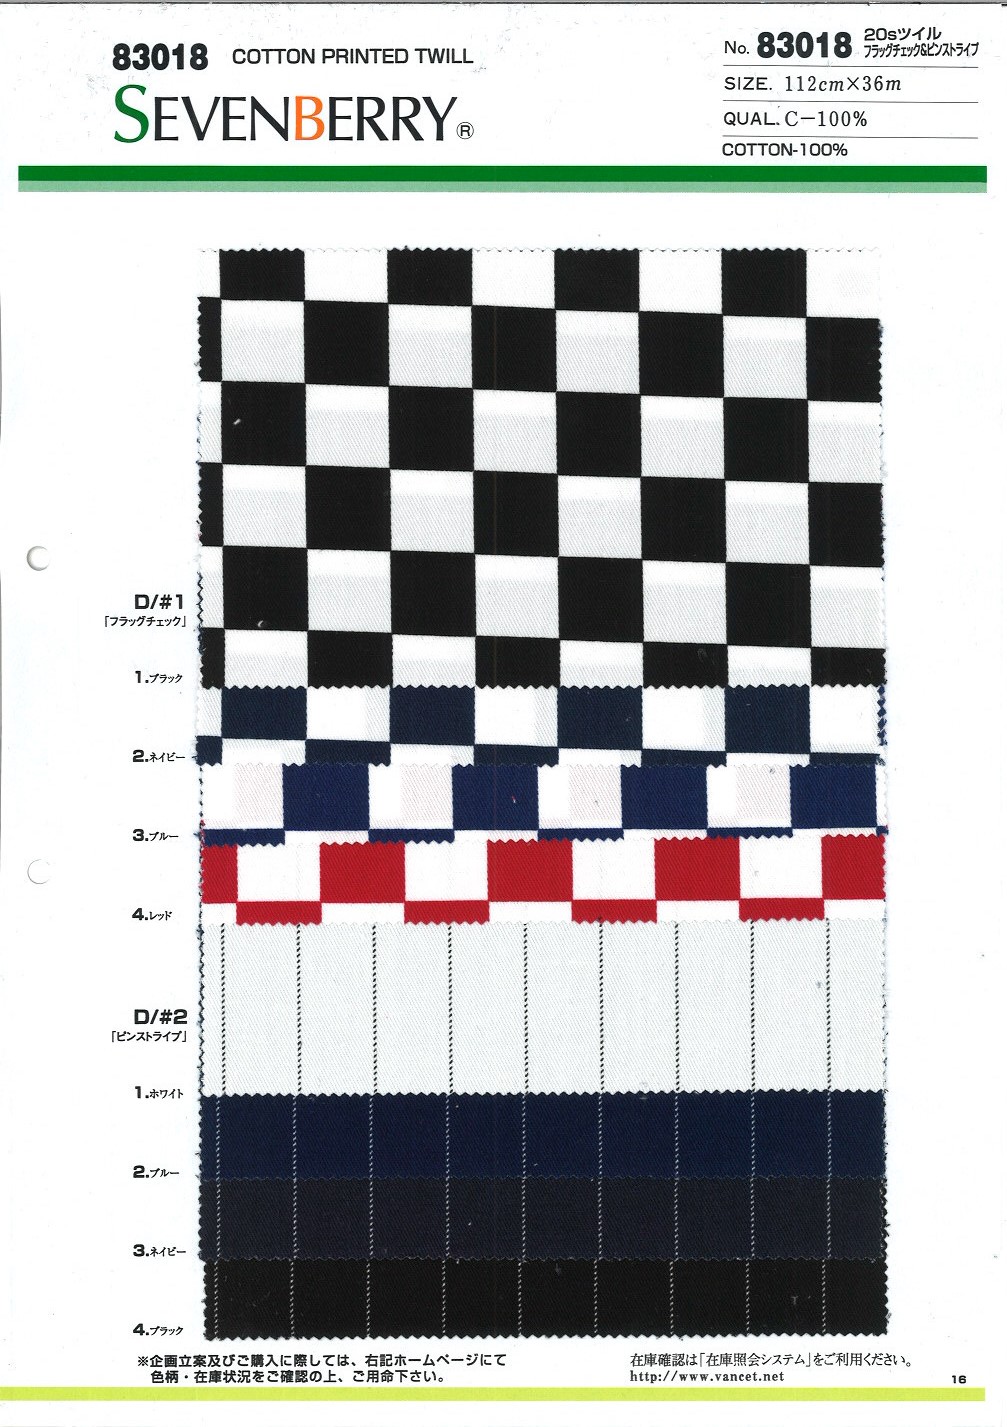 83018 20 Hilos Sarga Bandera Cuadros Y Rayas[Fabrica Textil] VANCET